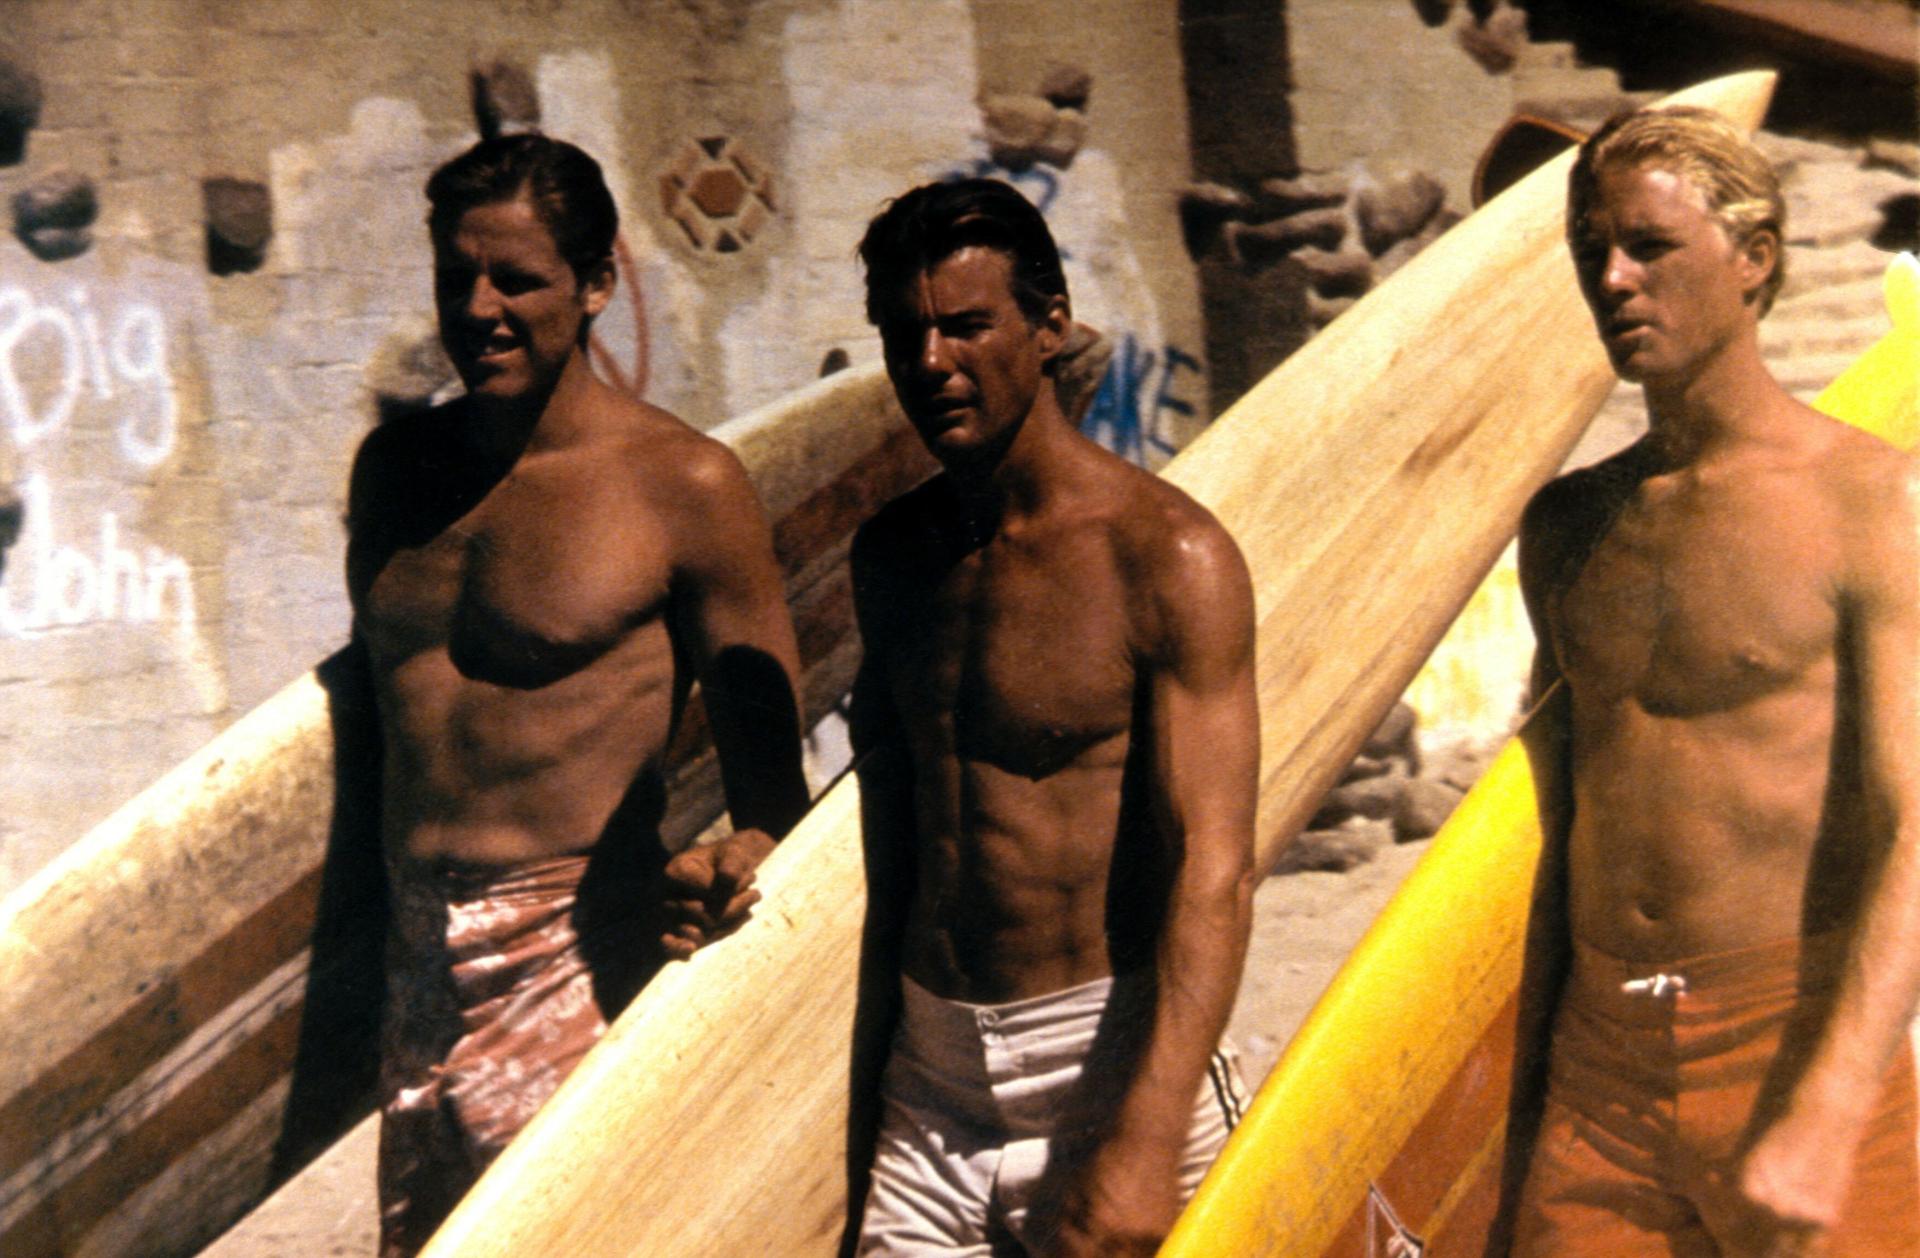 ‘Dan velikih valova‘: Život je val, prije 45 godina premijeru je imao najbolji surferski film svih vremena